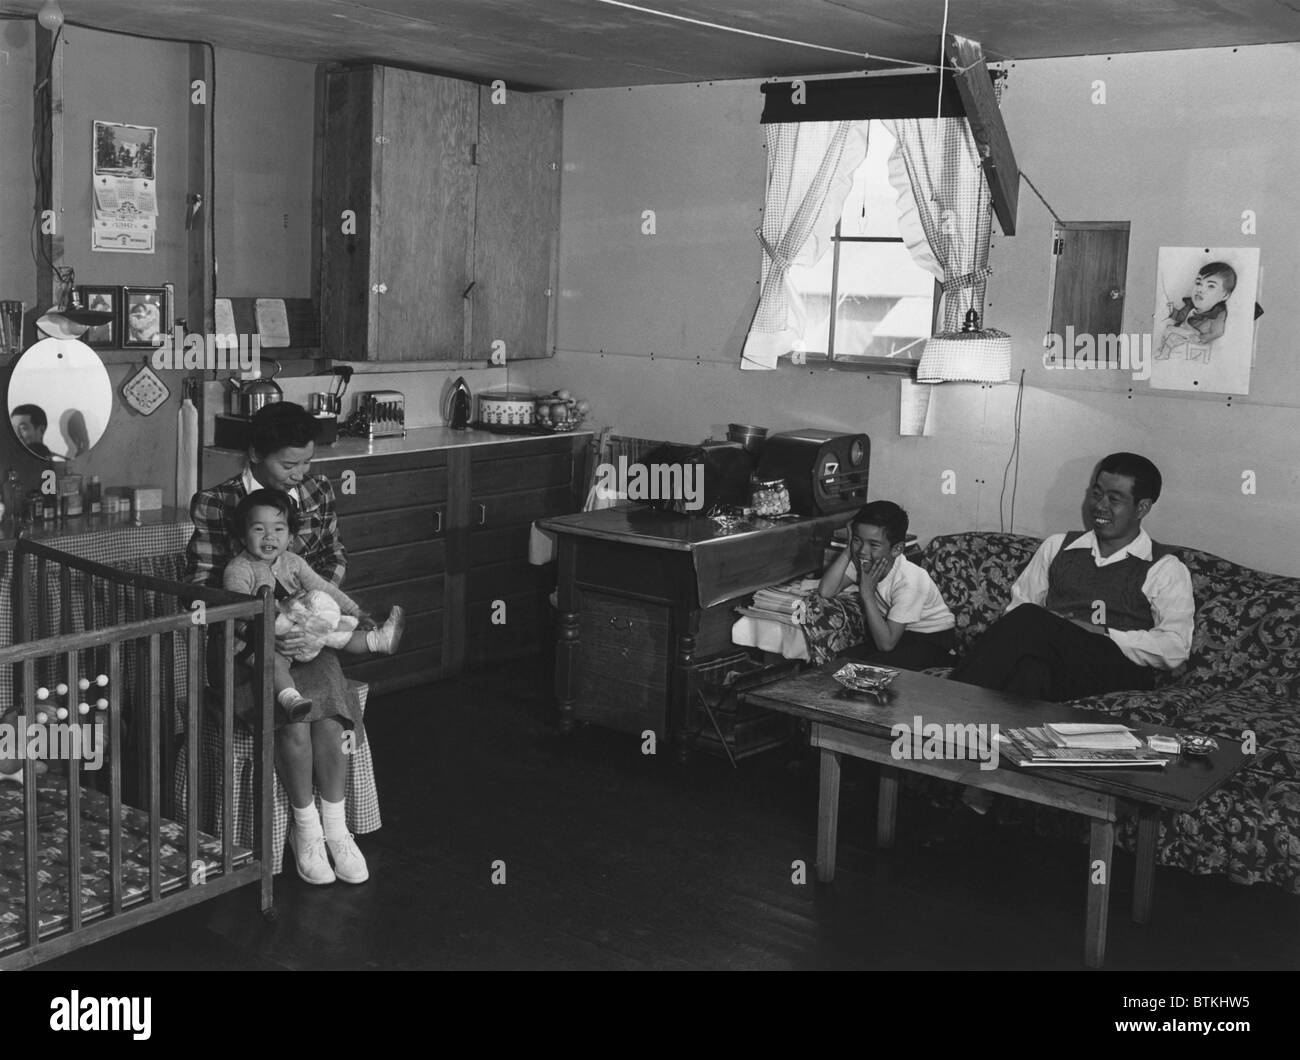 Giapponese famiglia americana internati a Manzanar Relocation Center durante la Seconda Guerra Mondiale. Il sig. e la Sig.ra Richard Izuno e i loro due bambini pongono una sola camera (ca. 20' x20') caserma home. 1943 fotografia di Ansel Adams. Foto Stock